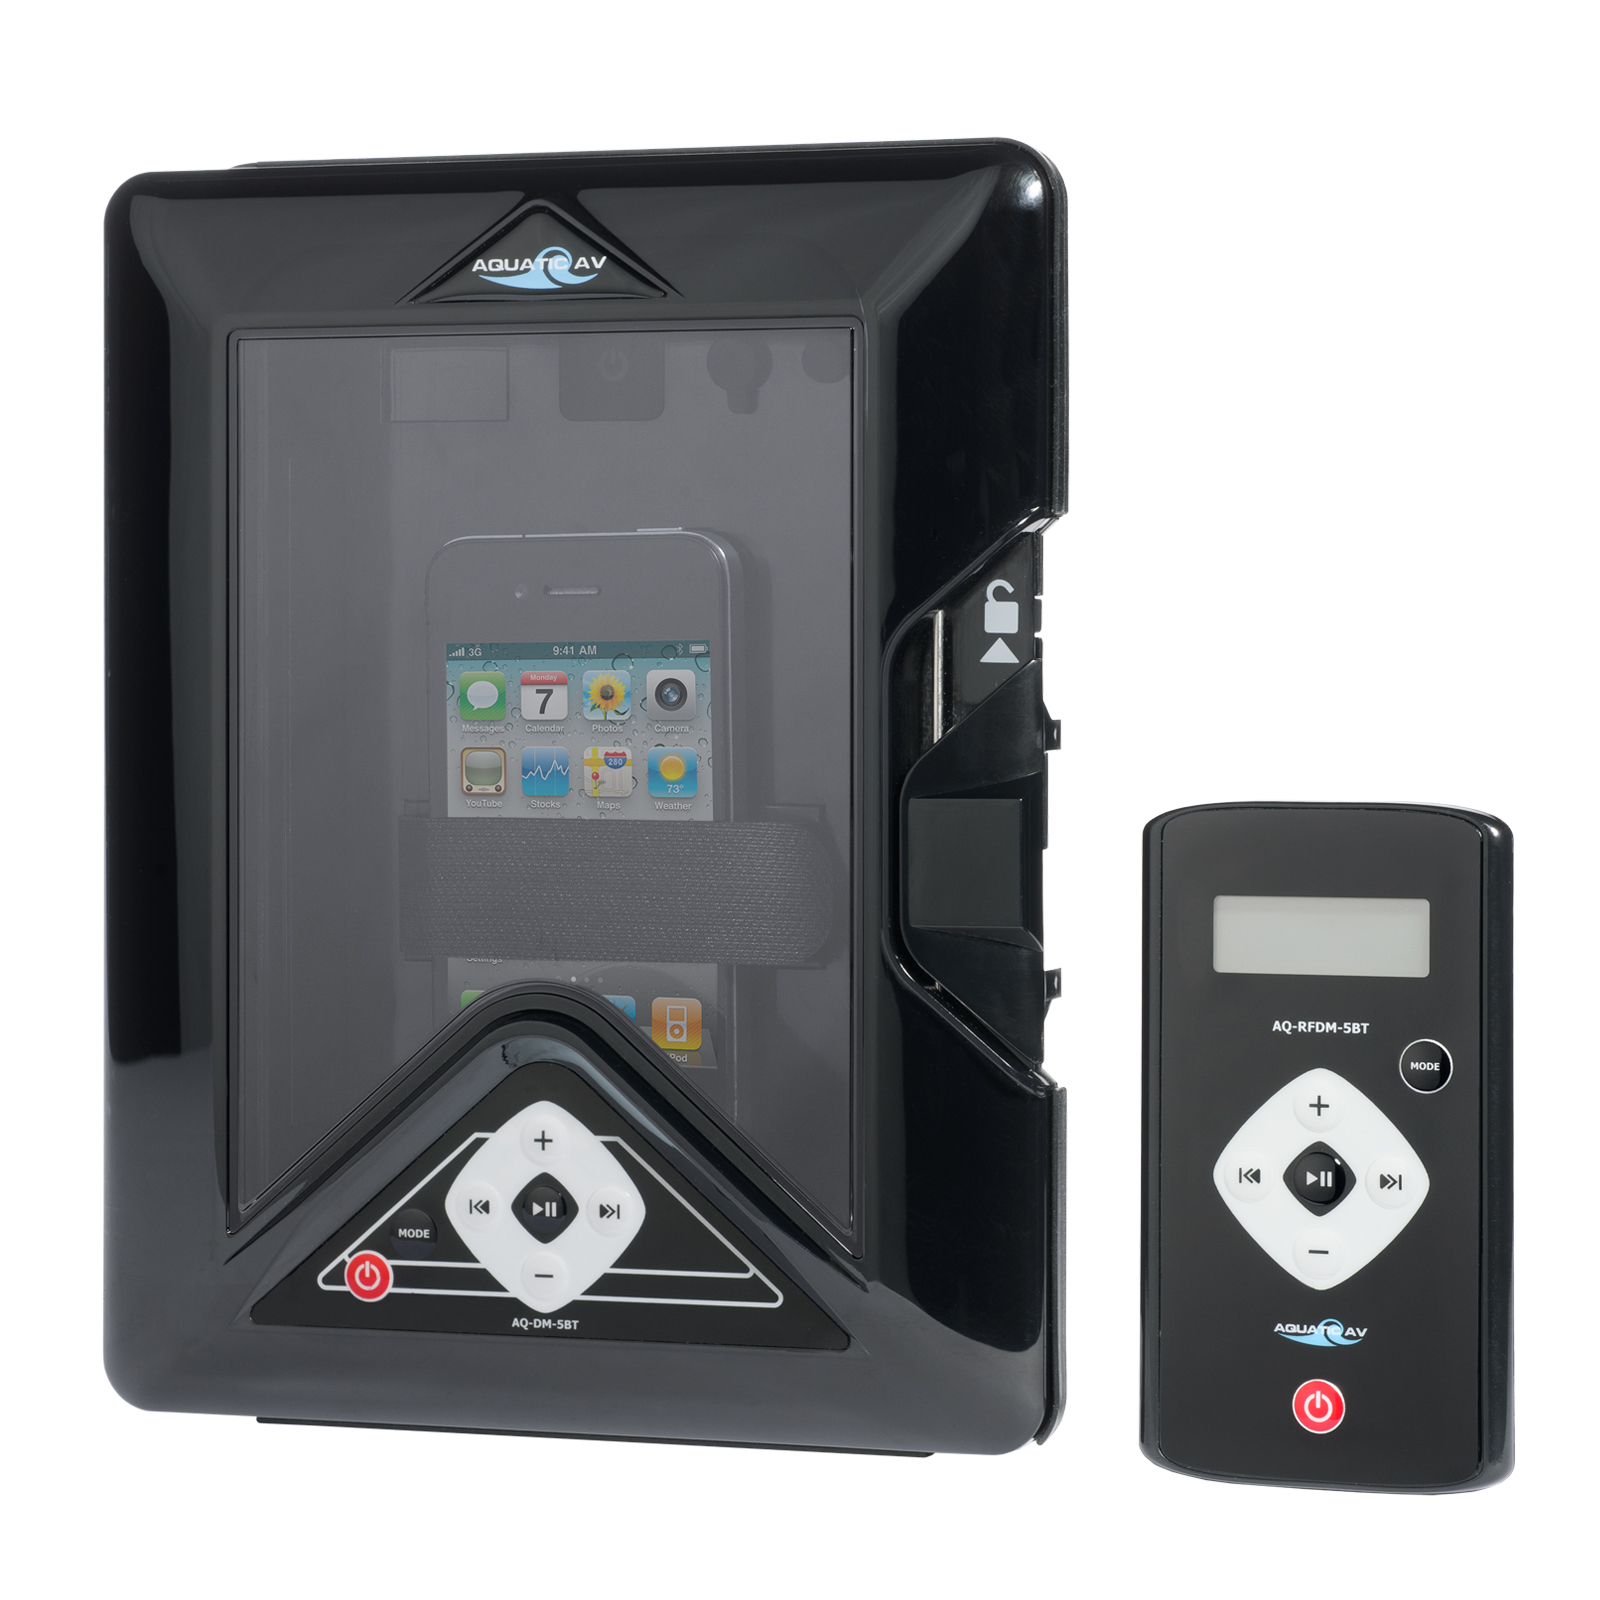 Aquatic AV AQ-DM-5BT MP3 Bluetooth Digital Media Locker Waterproof Marine Stereo